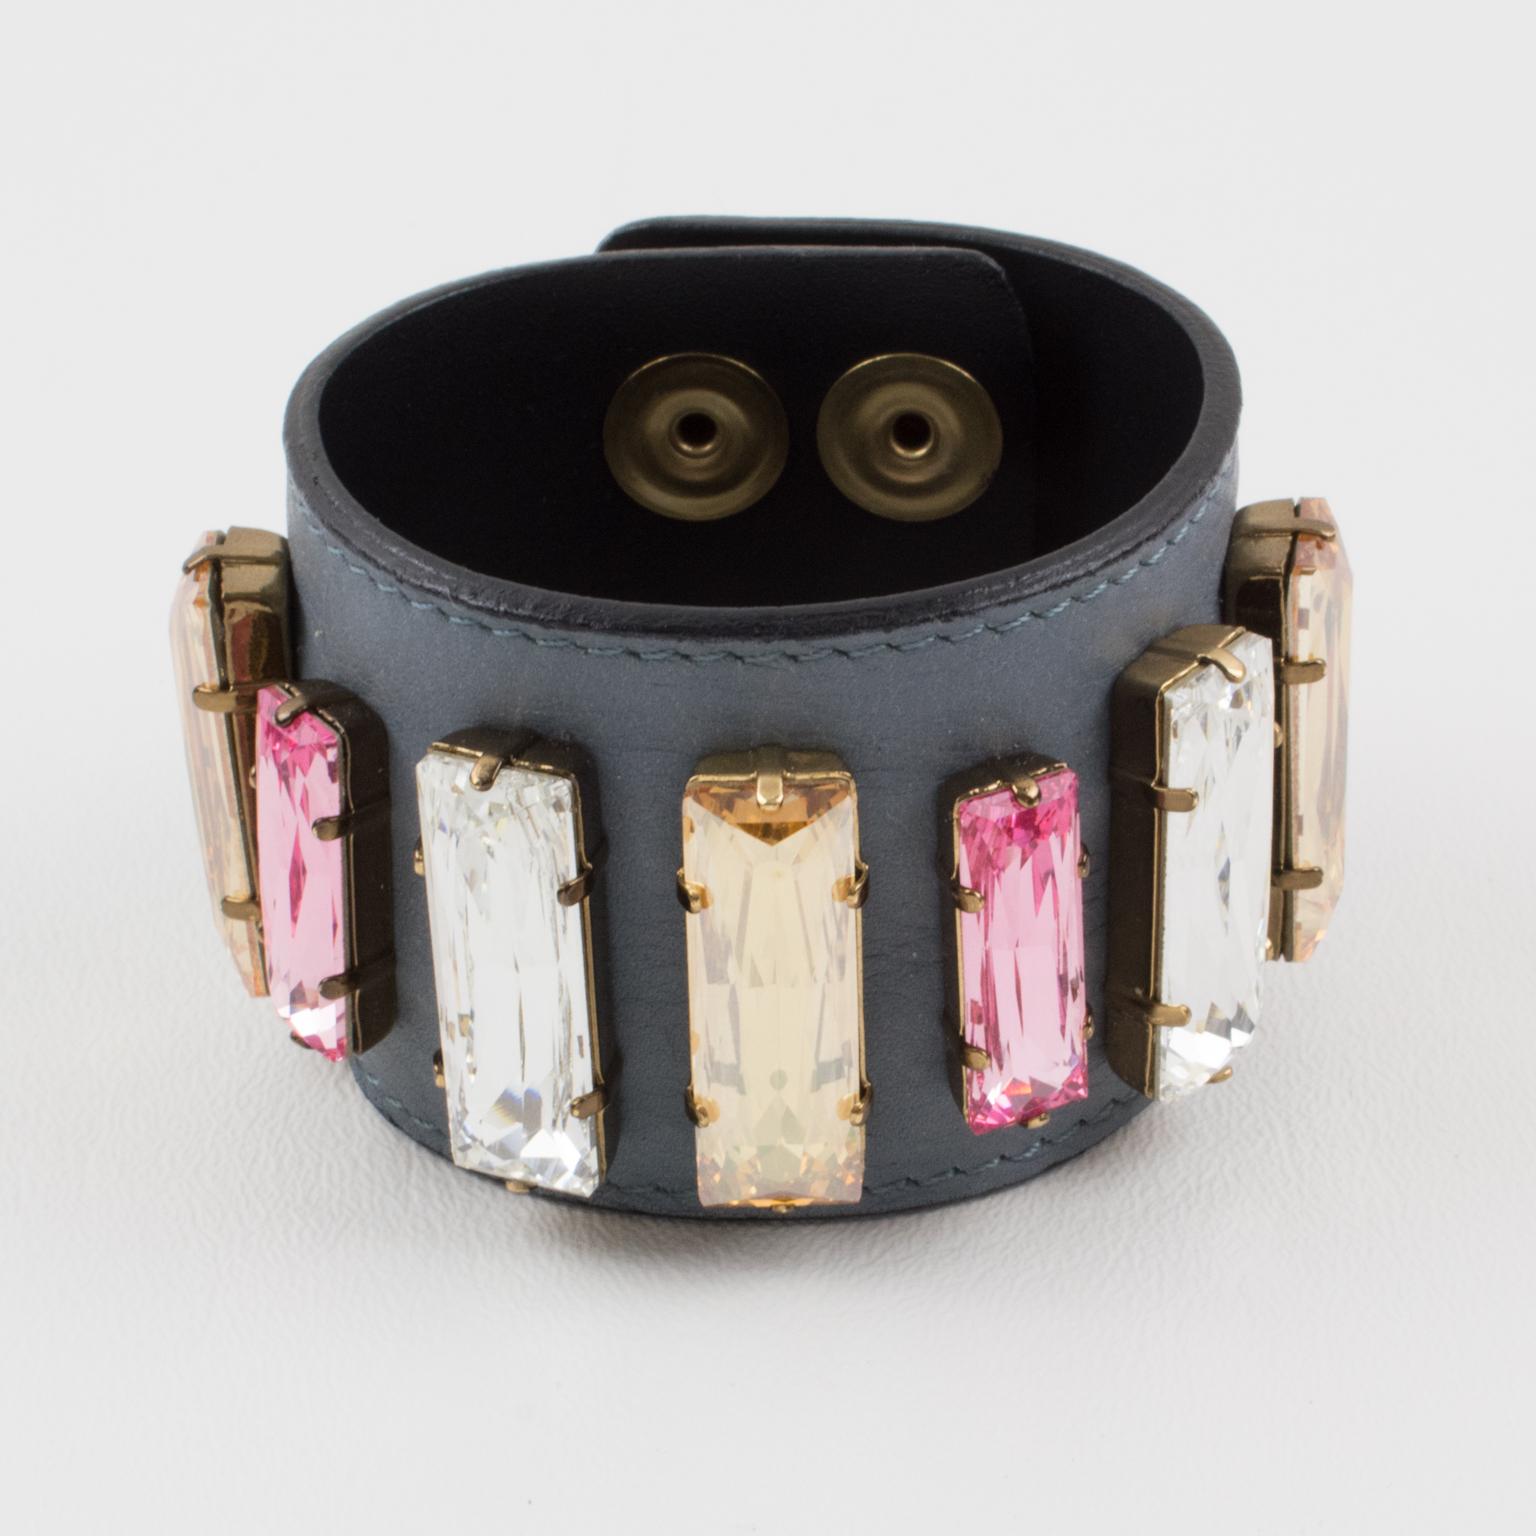 Un charmant bracelet ceinture en cuir conçu par Sonia Rykiel, Paris. Cette pièce présente un large bandeau surpiqué en cuir gris souris orné de strass en cristal de couleurs pastel en forme de longues baguettes assorties. Couleurs assorties de